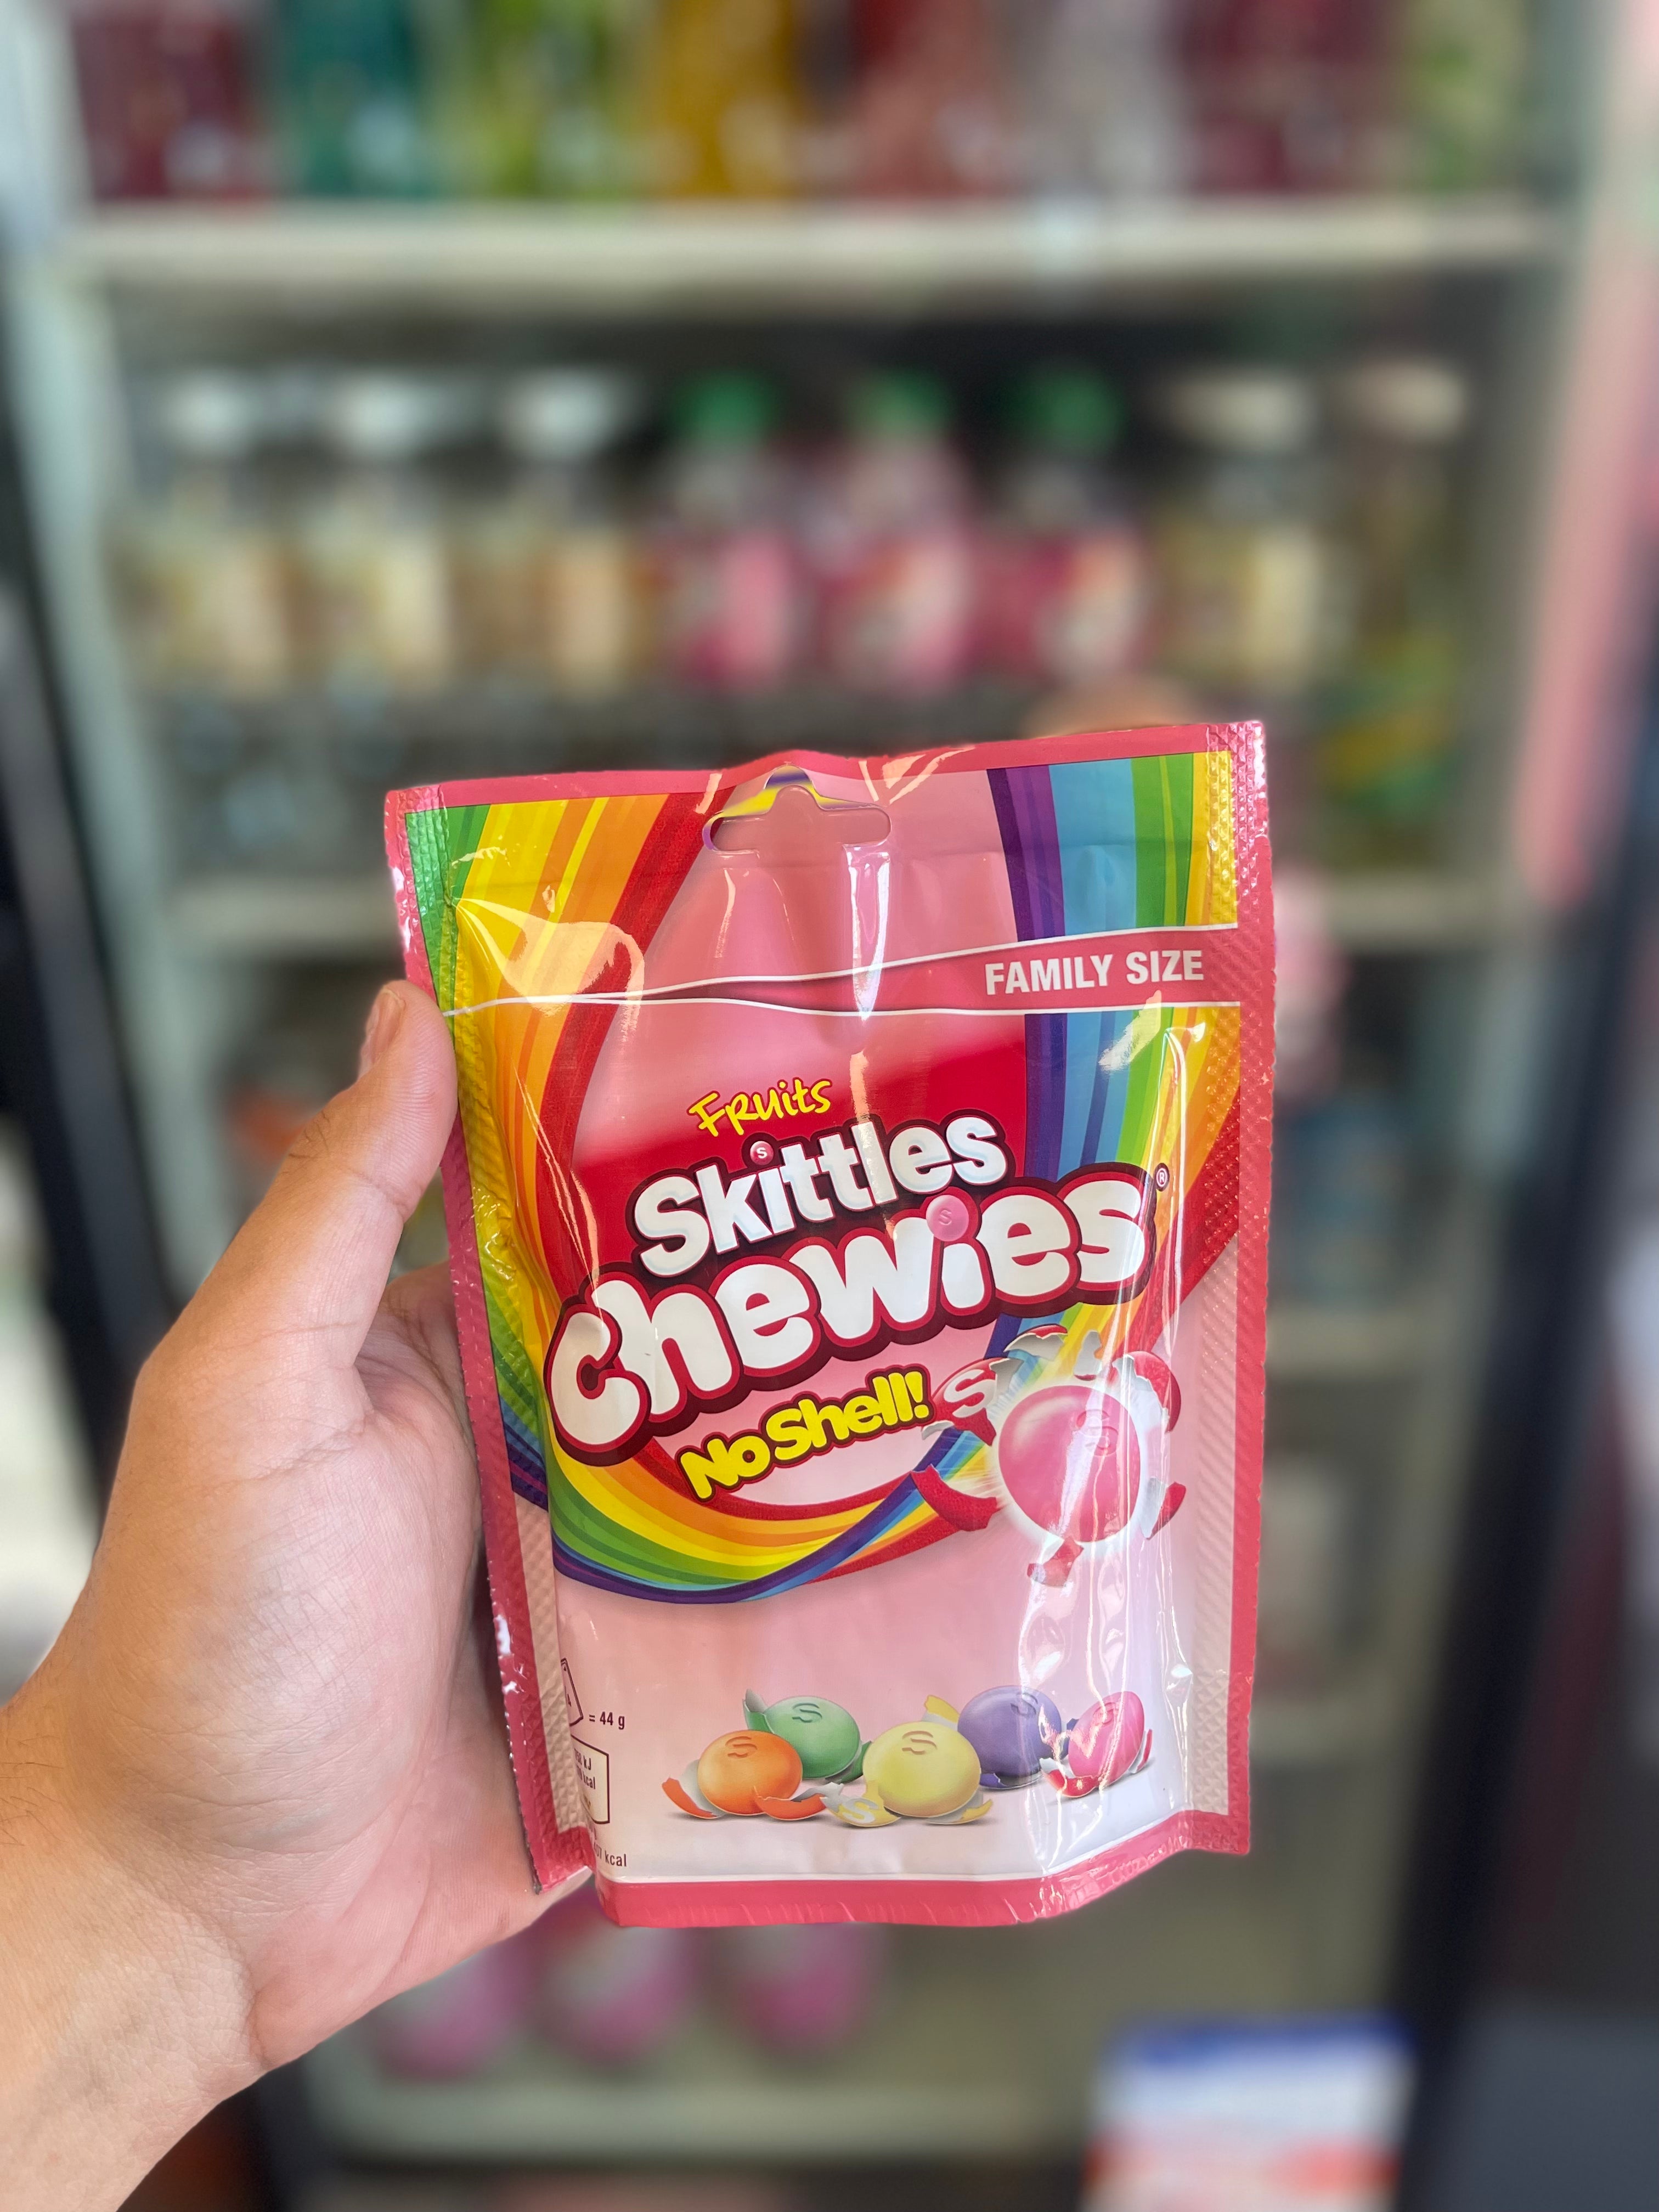 Skittles chewies “no shell”(UK)